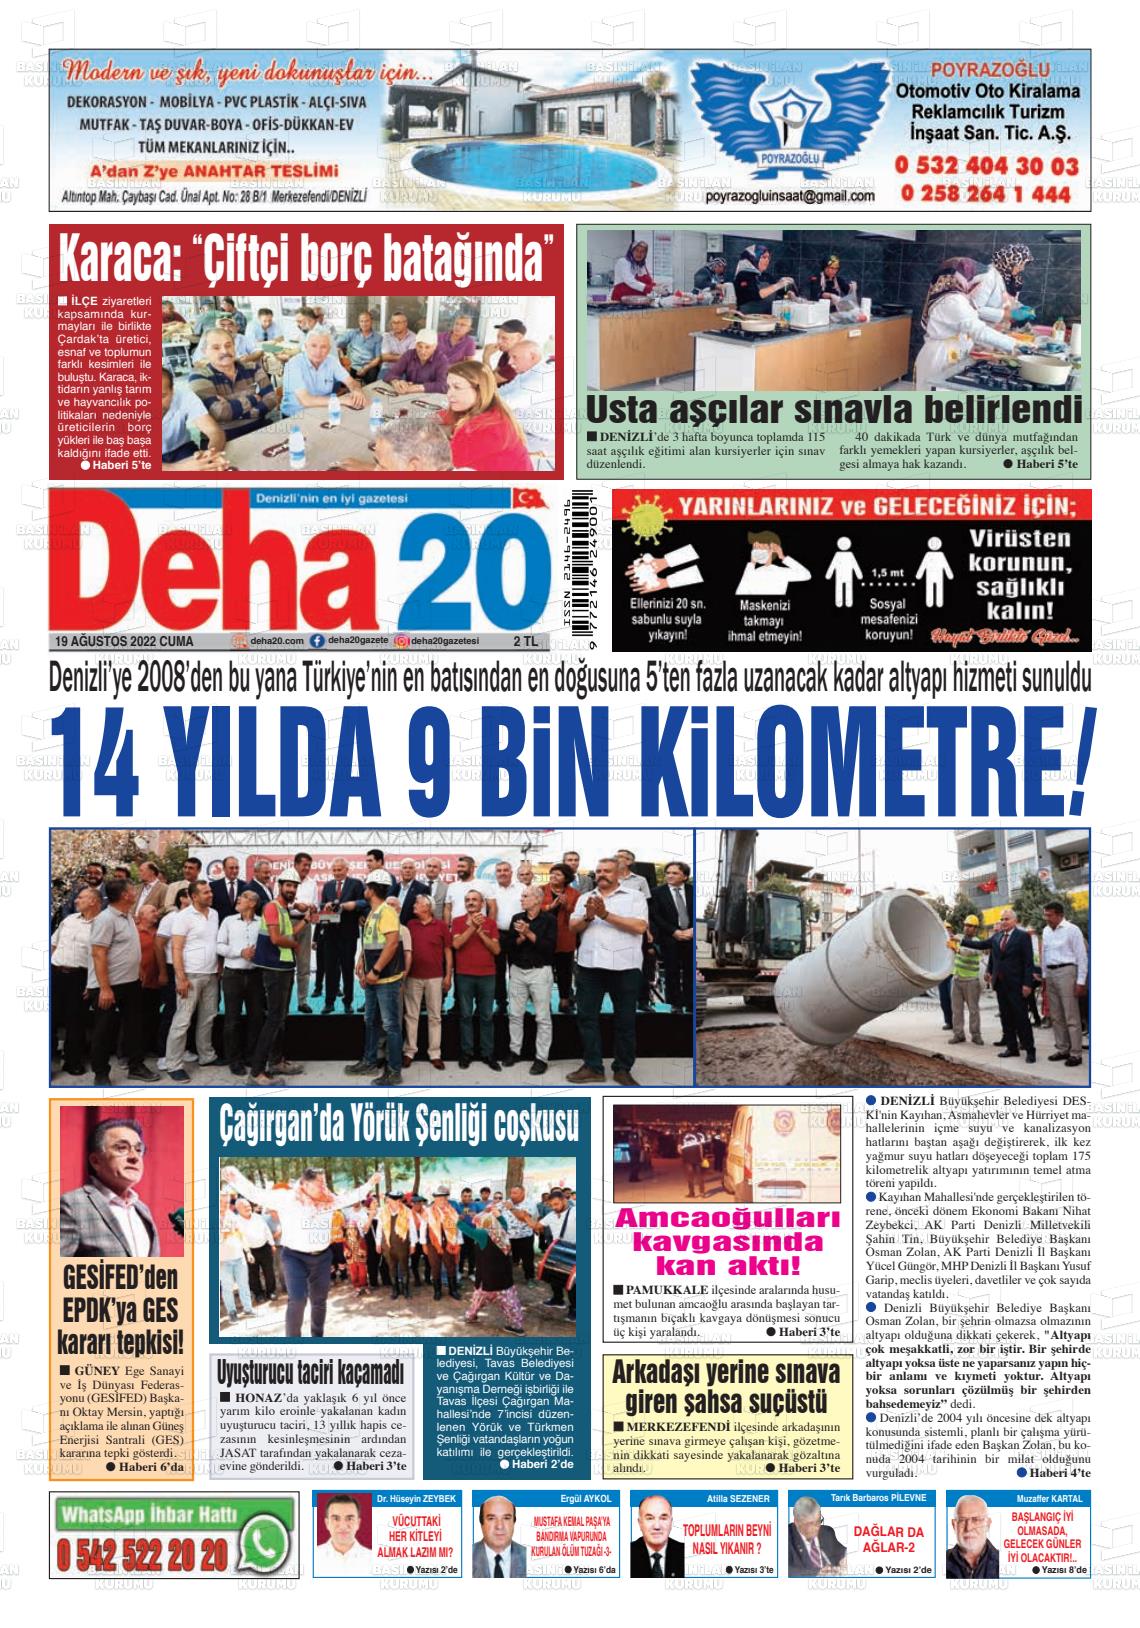 19 Ağustos 2022 Deha 20 Gazete Manşeti